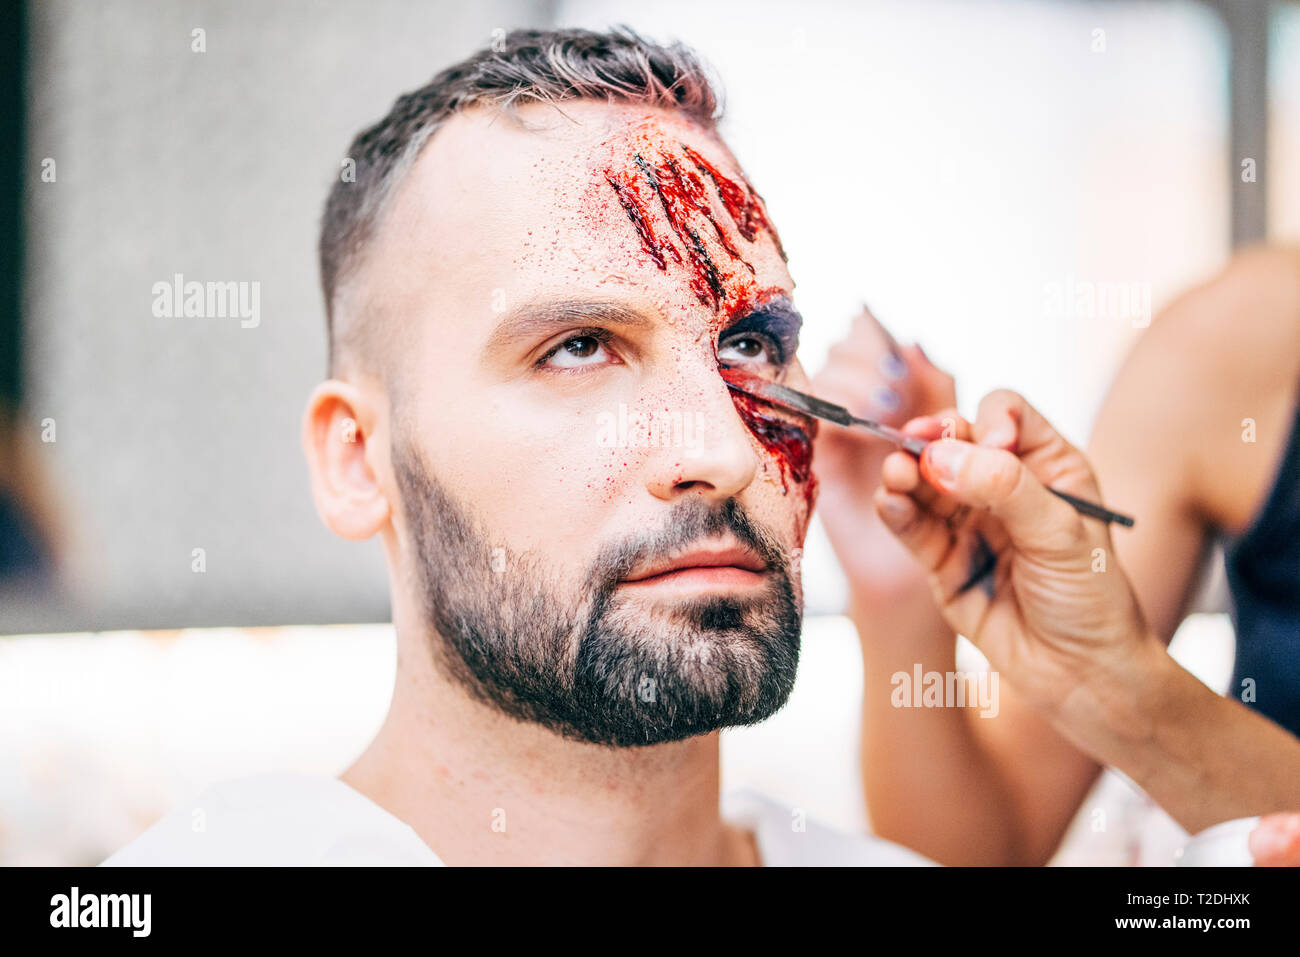 Mann mit Make-up im Gesicht mit Wunden und Blut Stockfotografie - Alamy